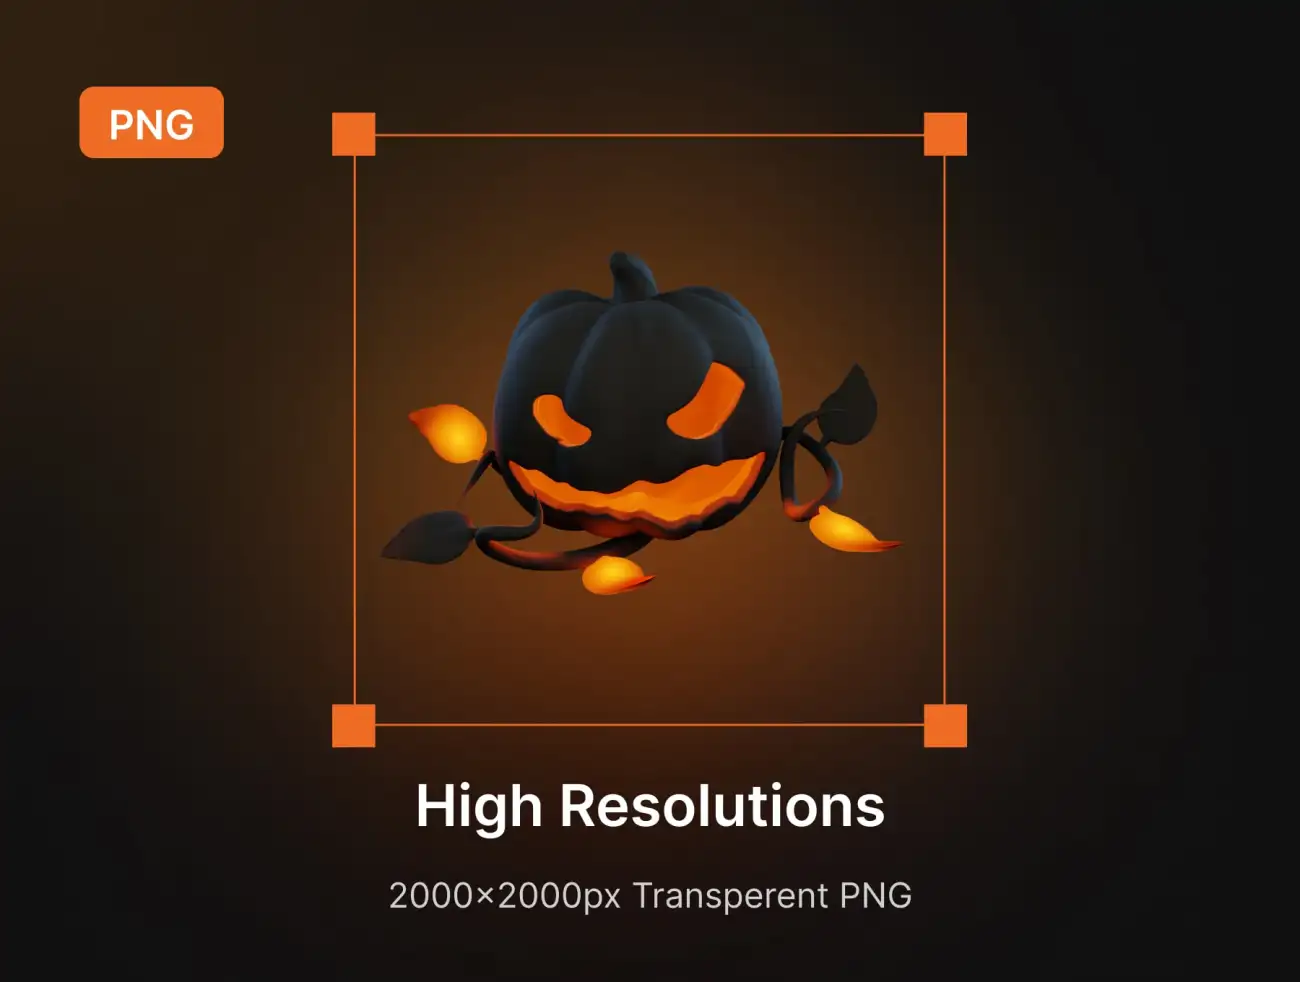 万圣节主题3D图标插图合集 Hallows Eve – Halloween 3D Icon & Sticker Pack插图7